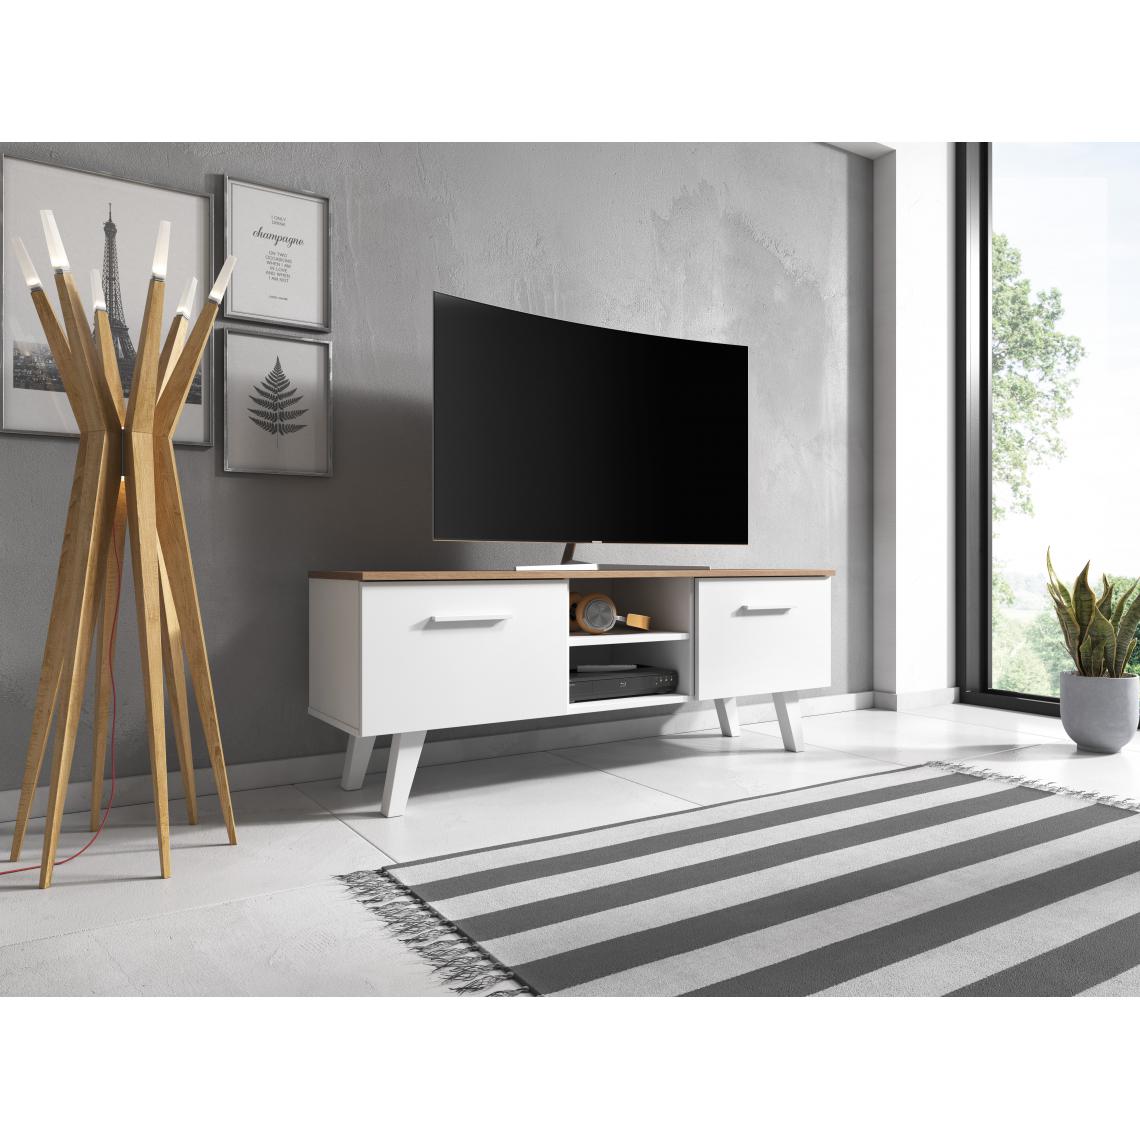 3xeliving - Armoire de style scandinave Fiodo blanc / artisanat tabaco 155cm - Meubles TV, Hi-Fi